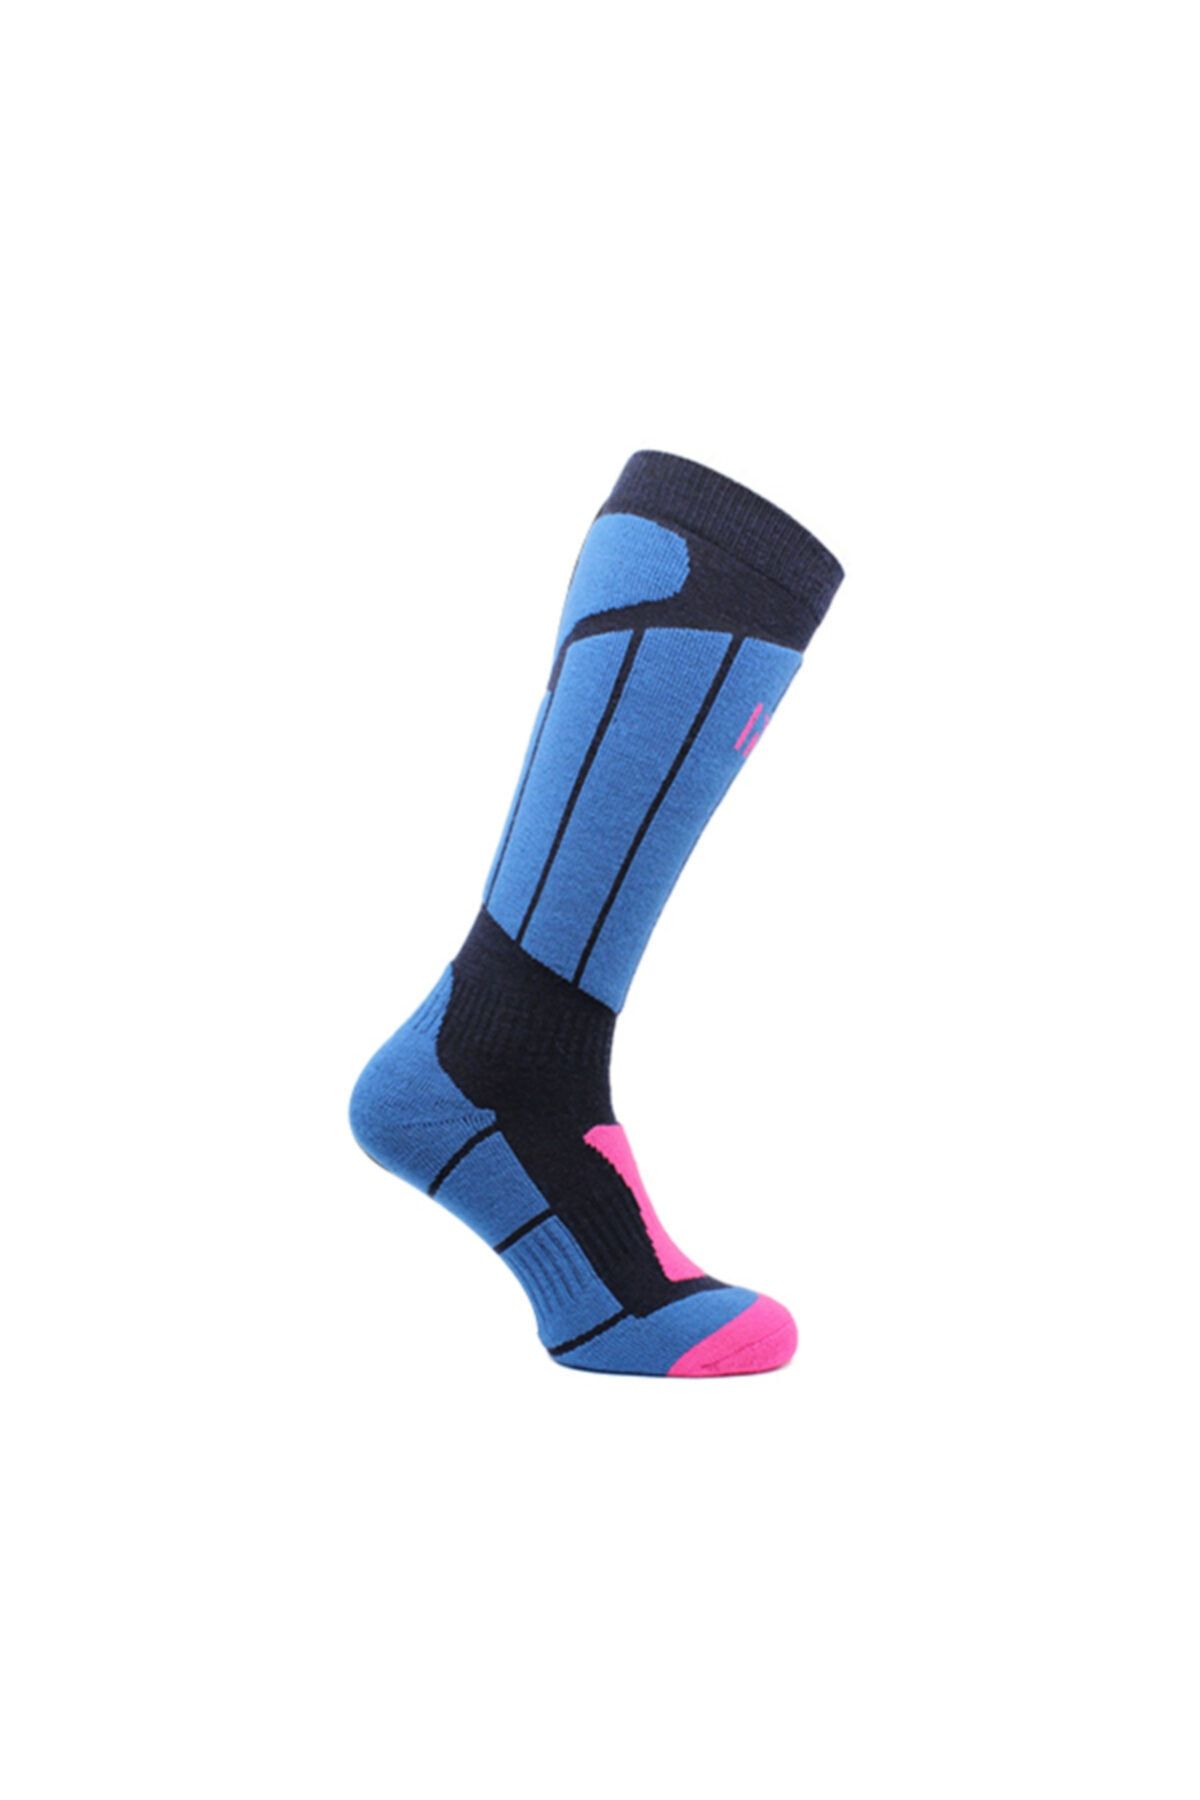 Norfolk Mavi Kayak Çorabı Buchner